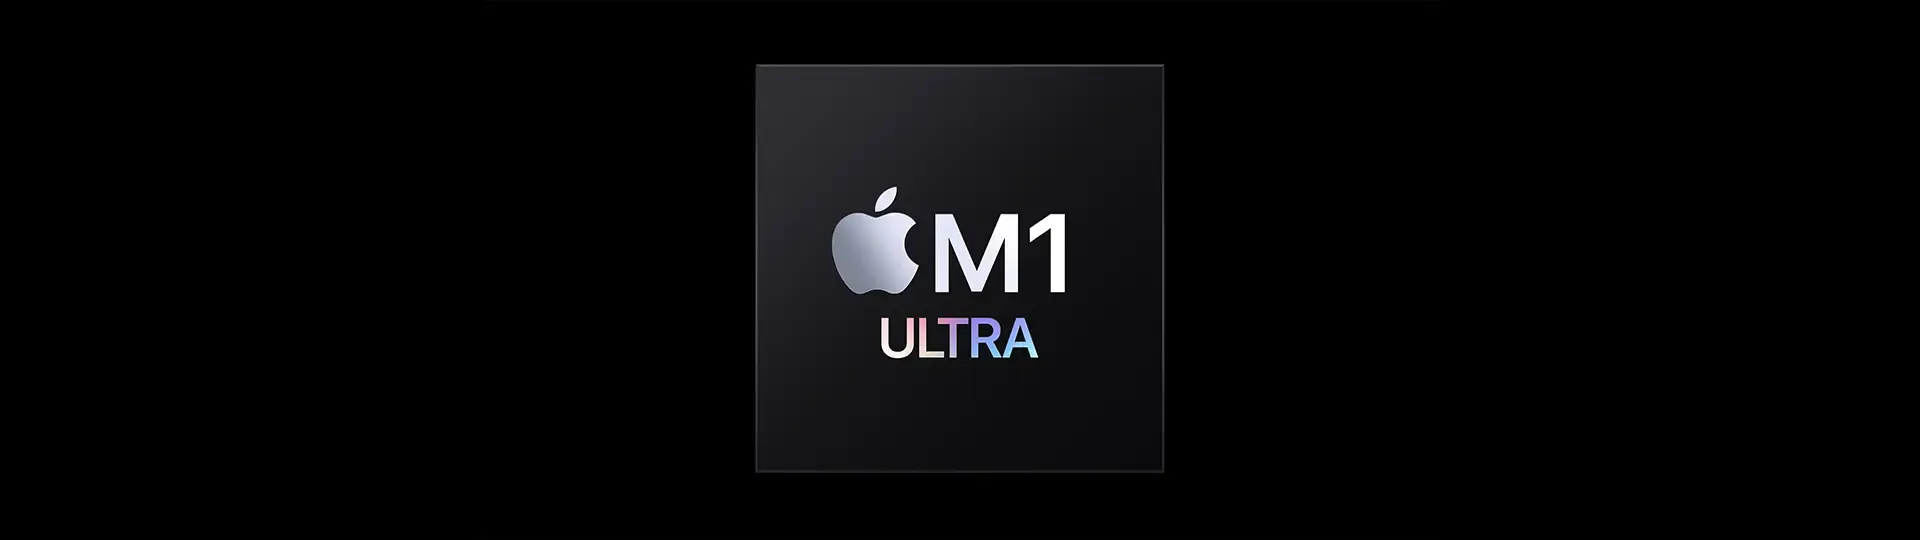 M1 Ultra é mesmo poderoso? Veja a análise do processador da Apple